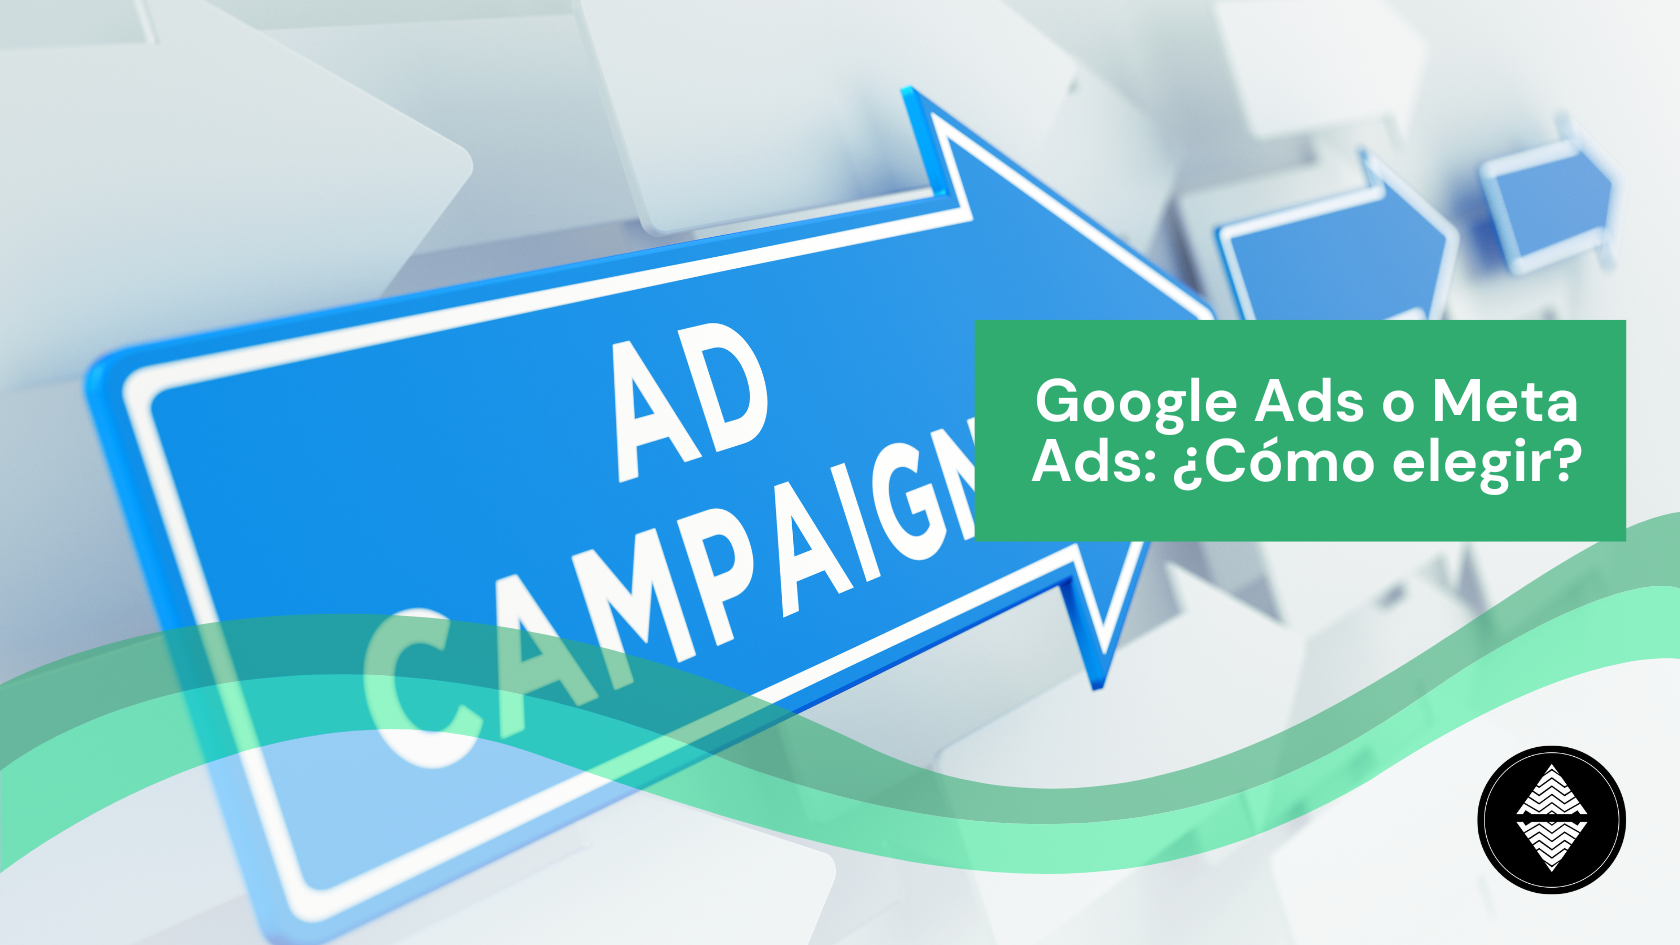 Google Ads o Meta Ads: ¿Cómo elegir?